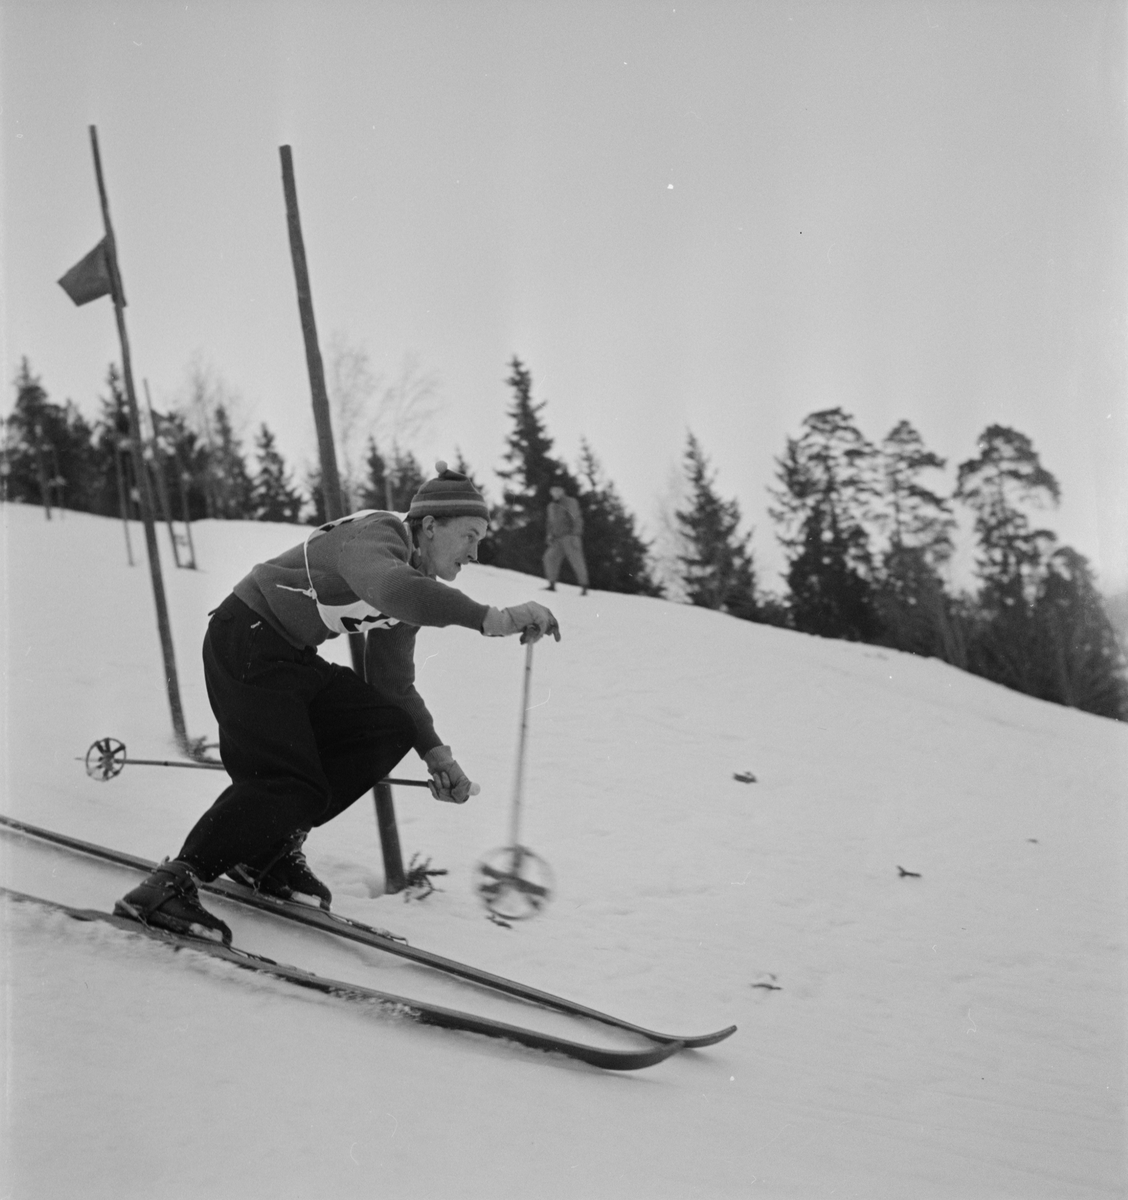 Skidor - slalom, sannolikt Uppsala 1954